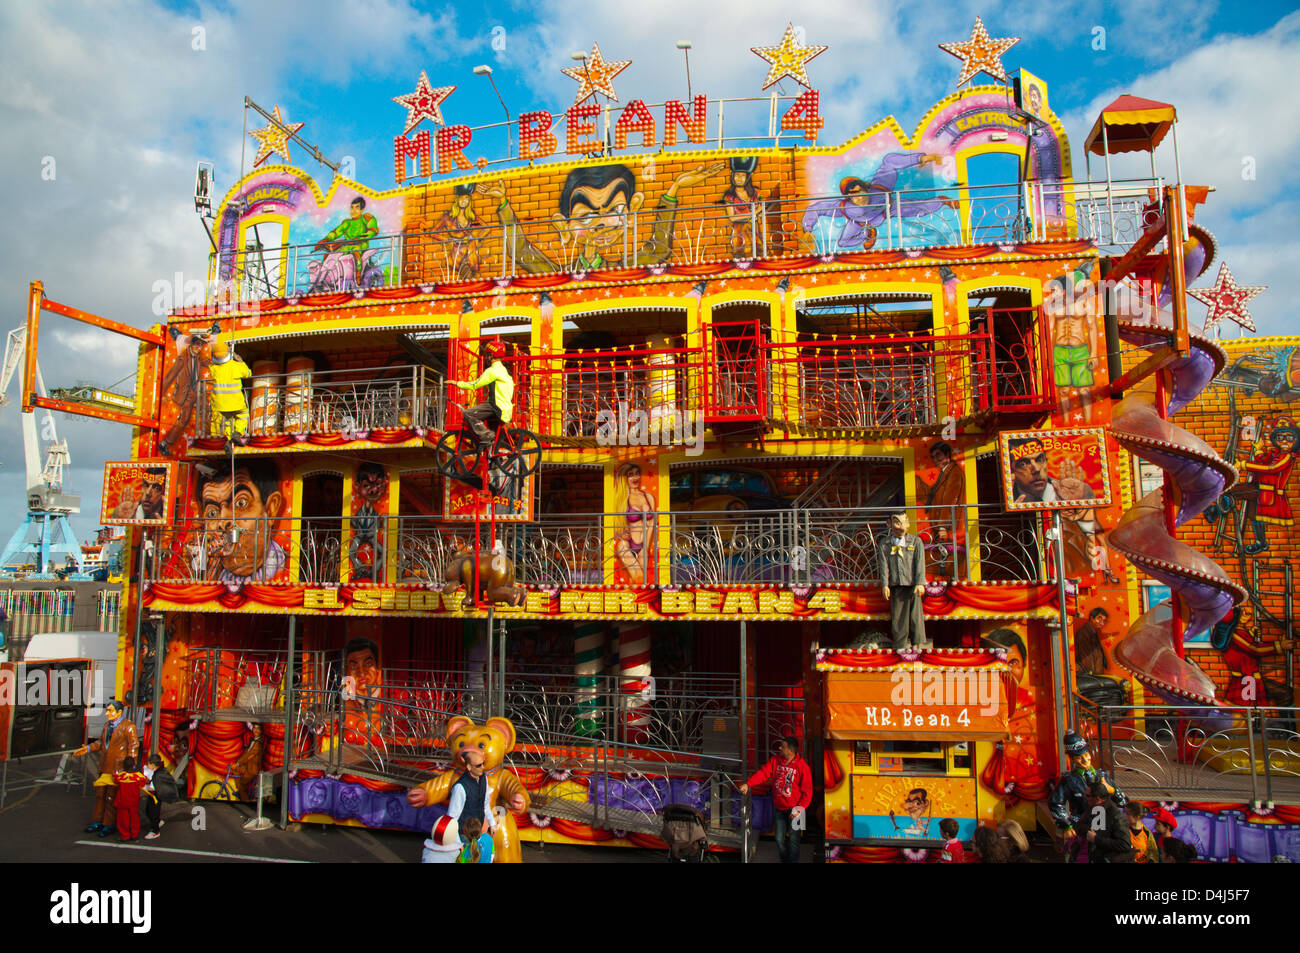 Mr Bean 4 Haus am Jahrmarkt während Karneval Santa Cruz Stadt Teneriffa Insel Kanaren Spanien Stockfoto